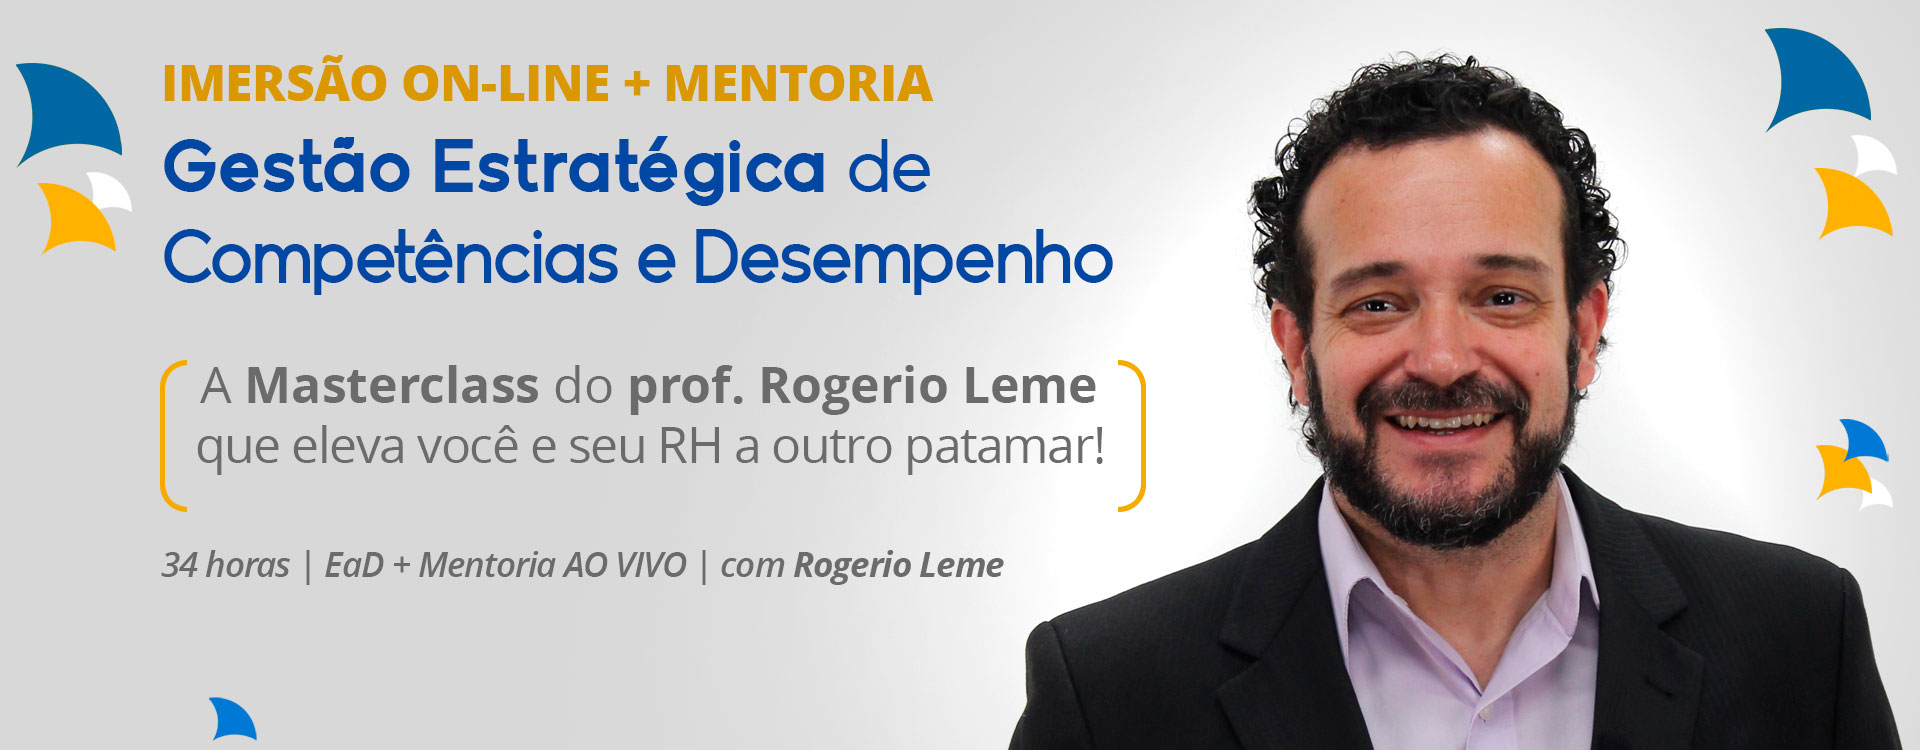 Masterclass on-line com mentoria ao vivo: Gestão de Desempenho e Competências com Rogerio Leme. Clique e saiba mais!